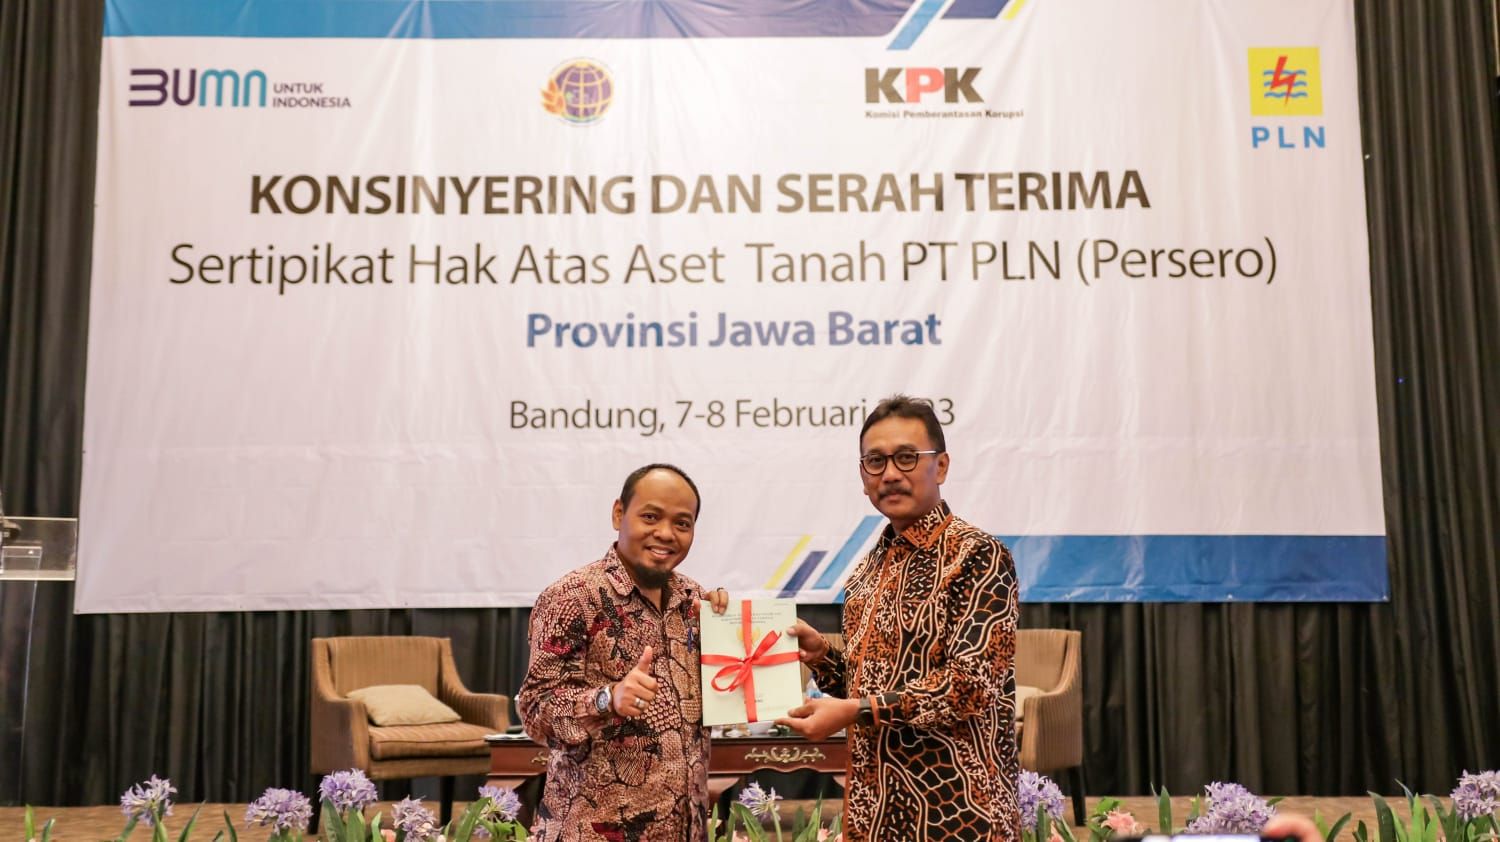 Sebanyak 9 sertifikat dengan total luasan lebih dari 27 Hektar berhasil diterima dari Kantor Wilayah Badan Pertanahan Nasional (Kanwil BPN) Jawa Barat dan Kanwil BPN Jawa Tengah. 